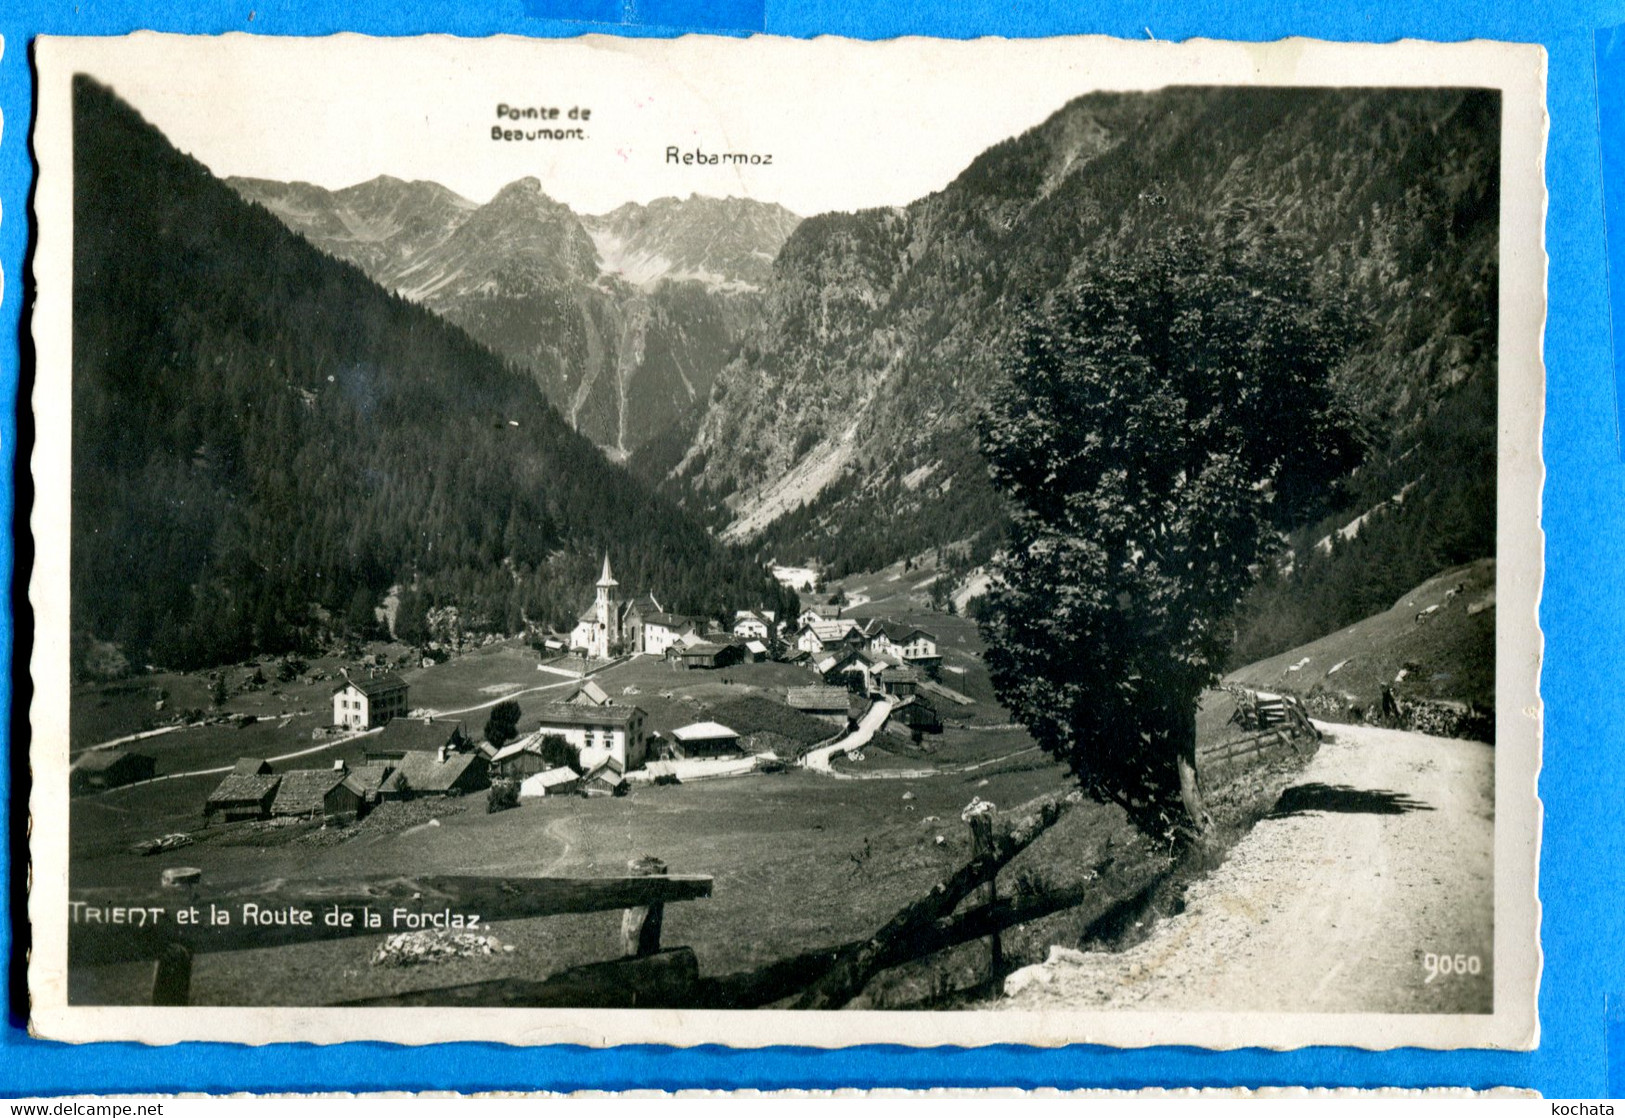 COVR1334, Trient Et La Route De La Forclaz, Pointe De Beaumont, Rebarmoz, 9050, Perrochet-Matile, Circulée 1942 - Trient